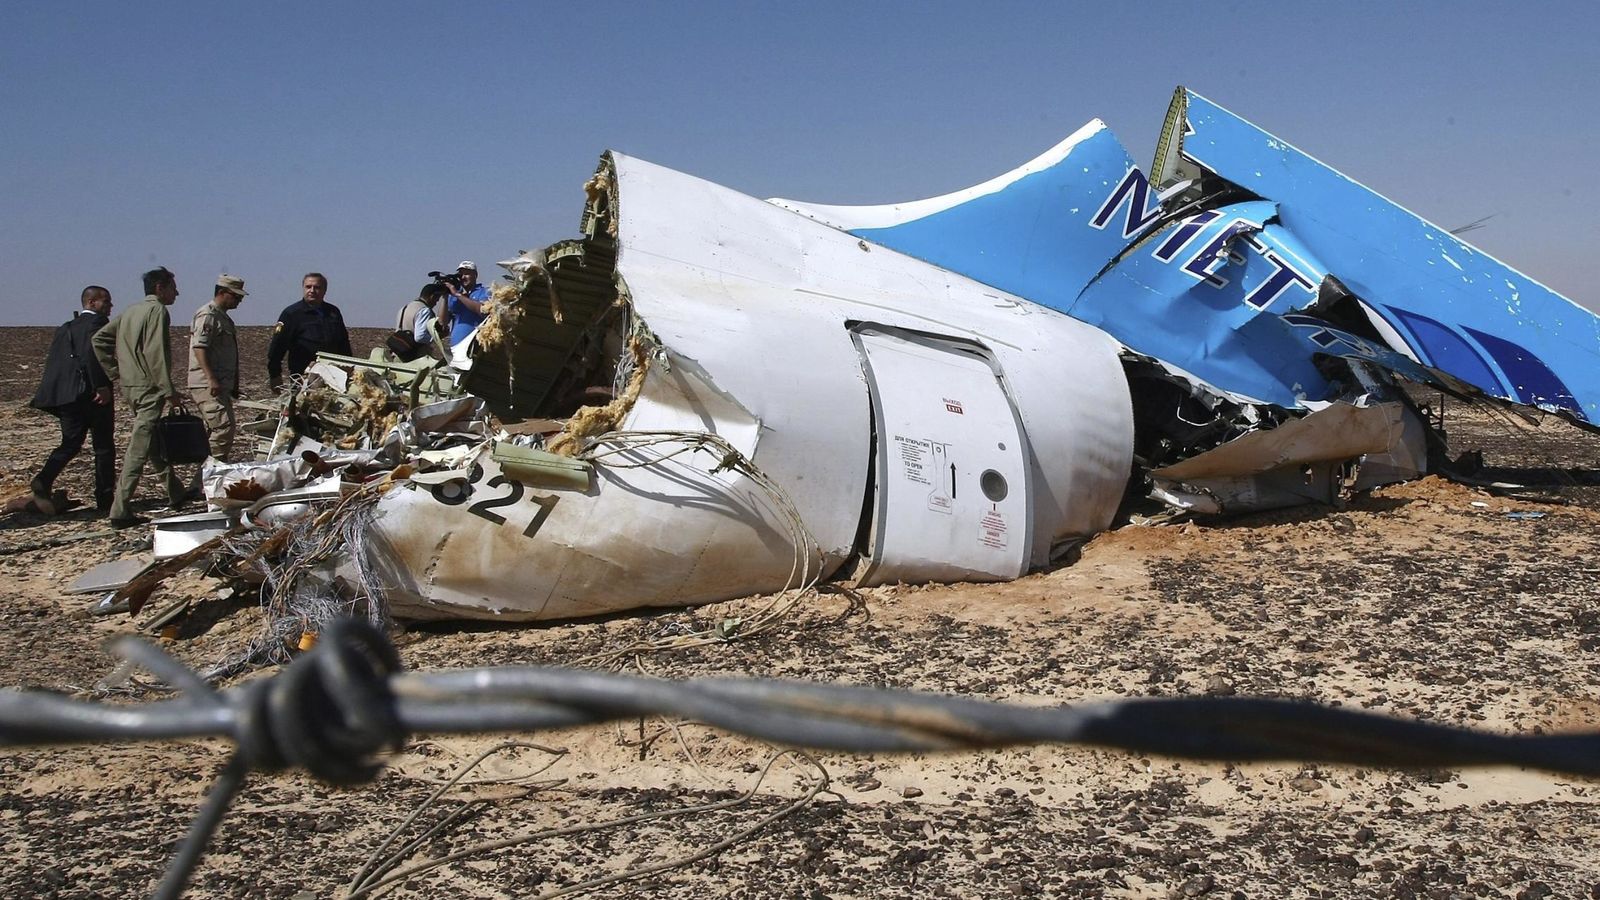  EgyptAir: Restos humanos sugieren que hubo explosión a bordo